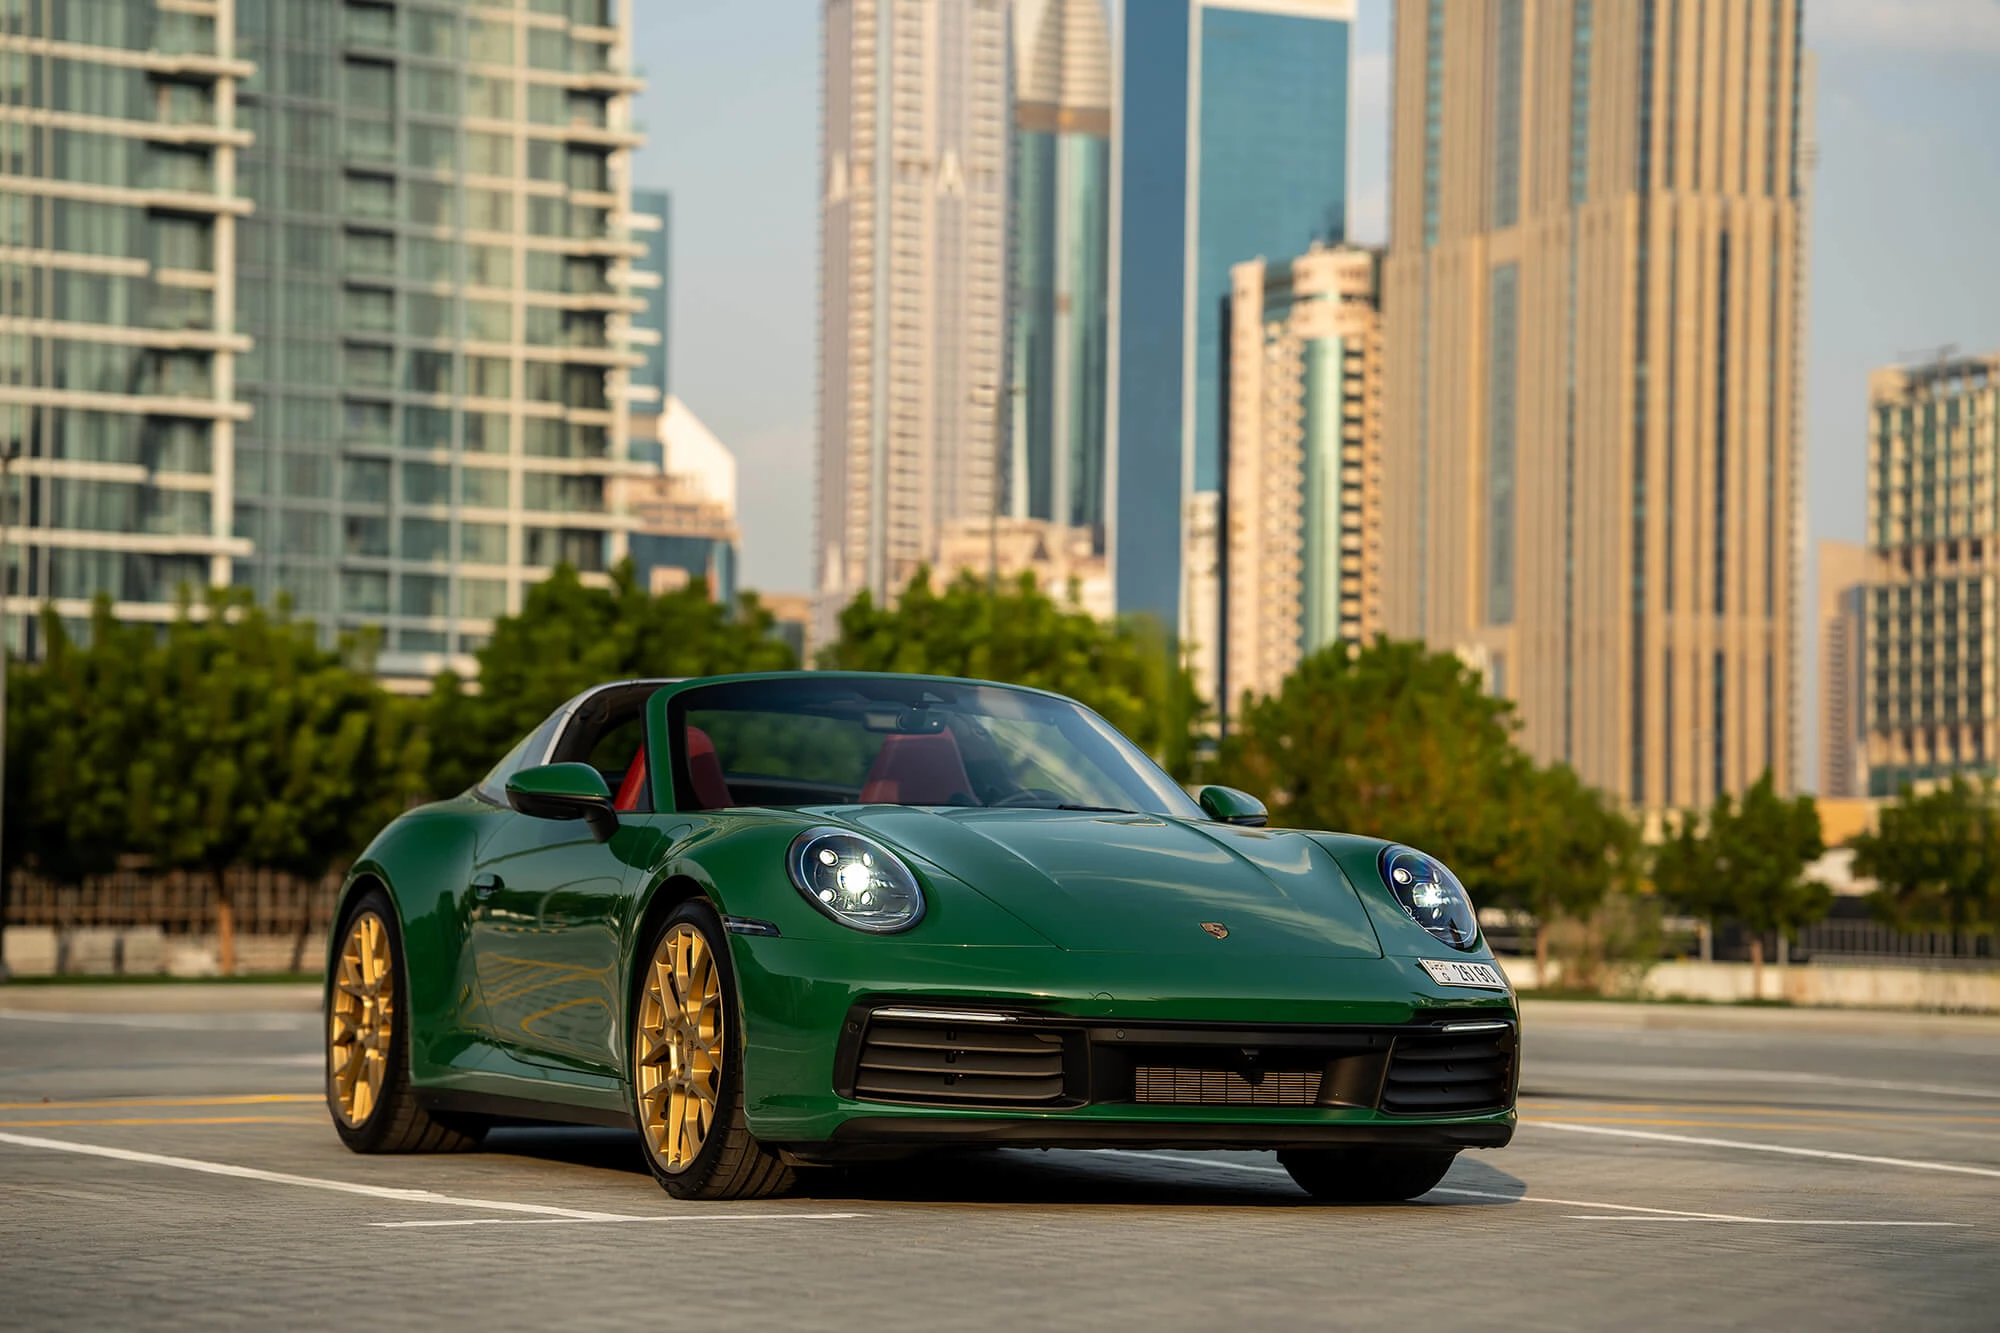 Porsche 911 Targa Grøn